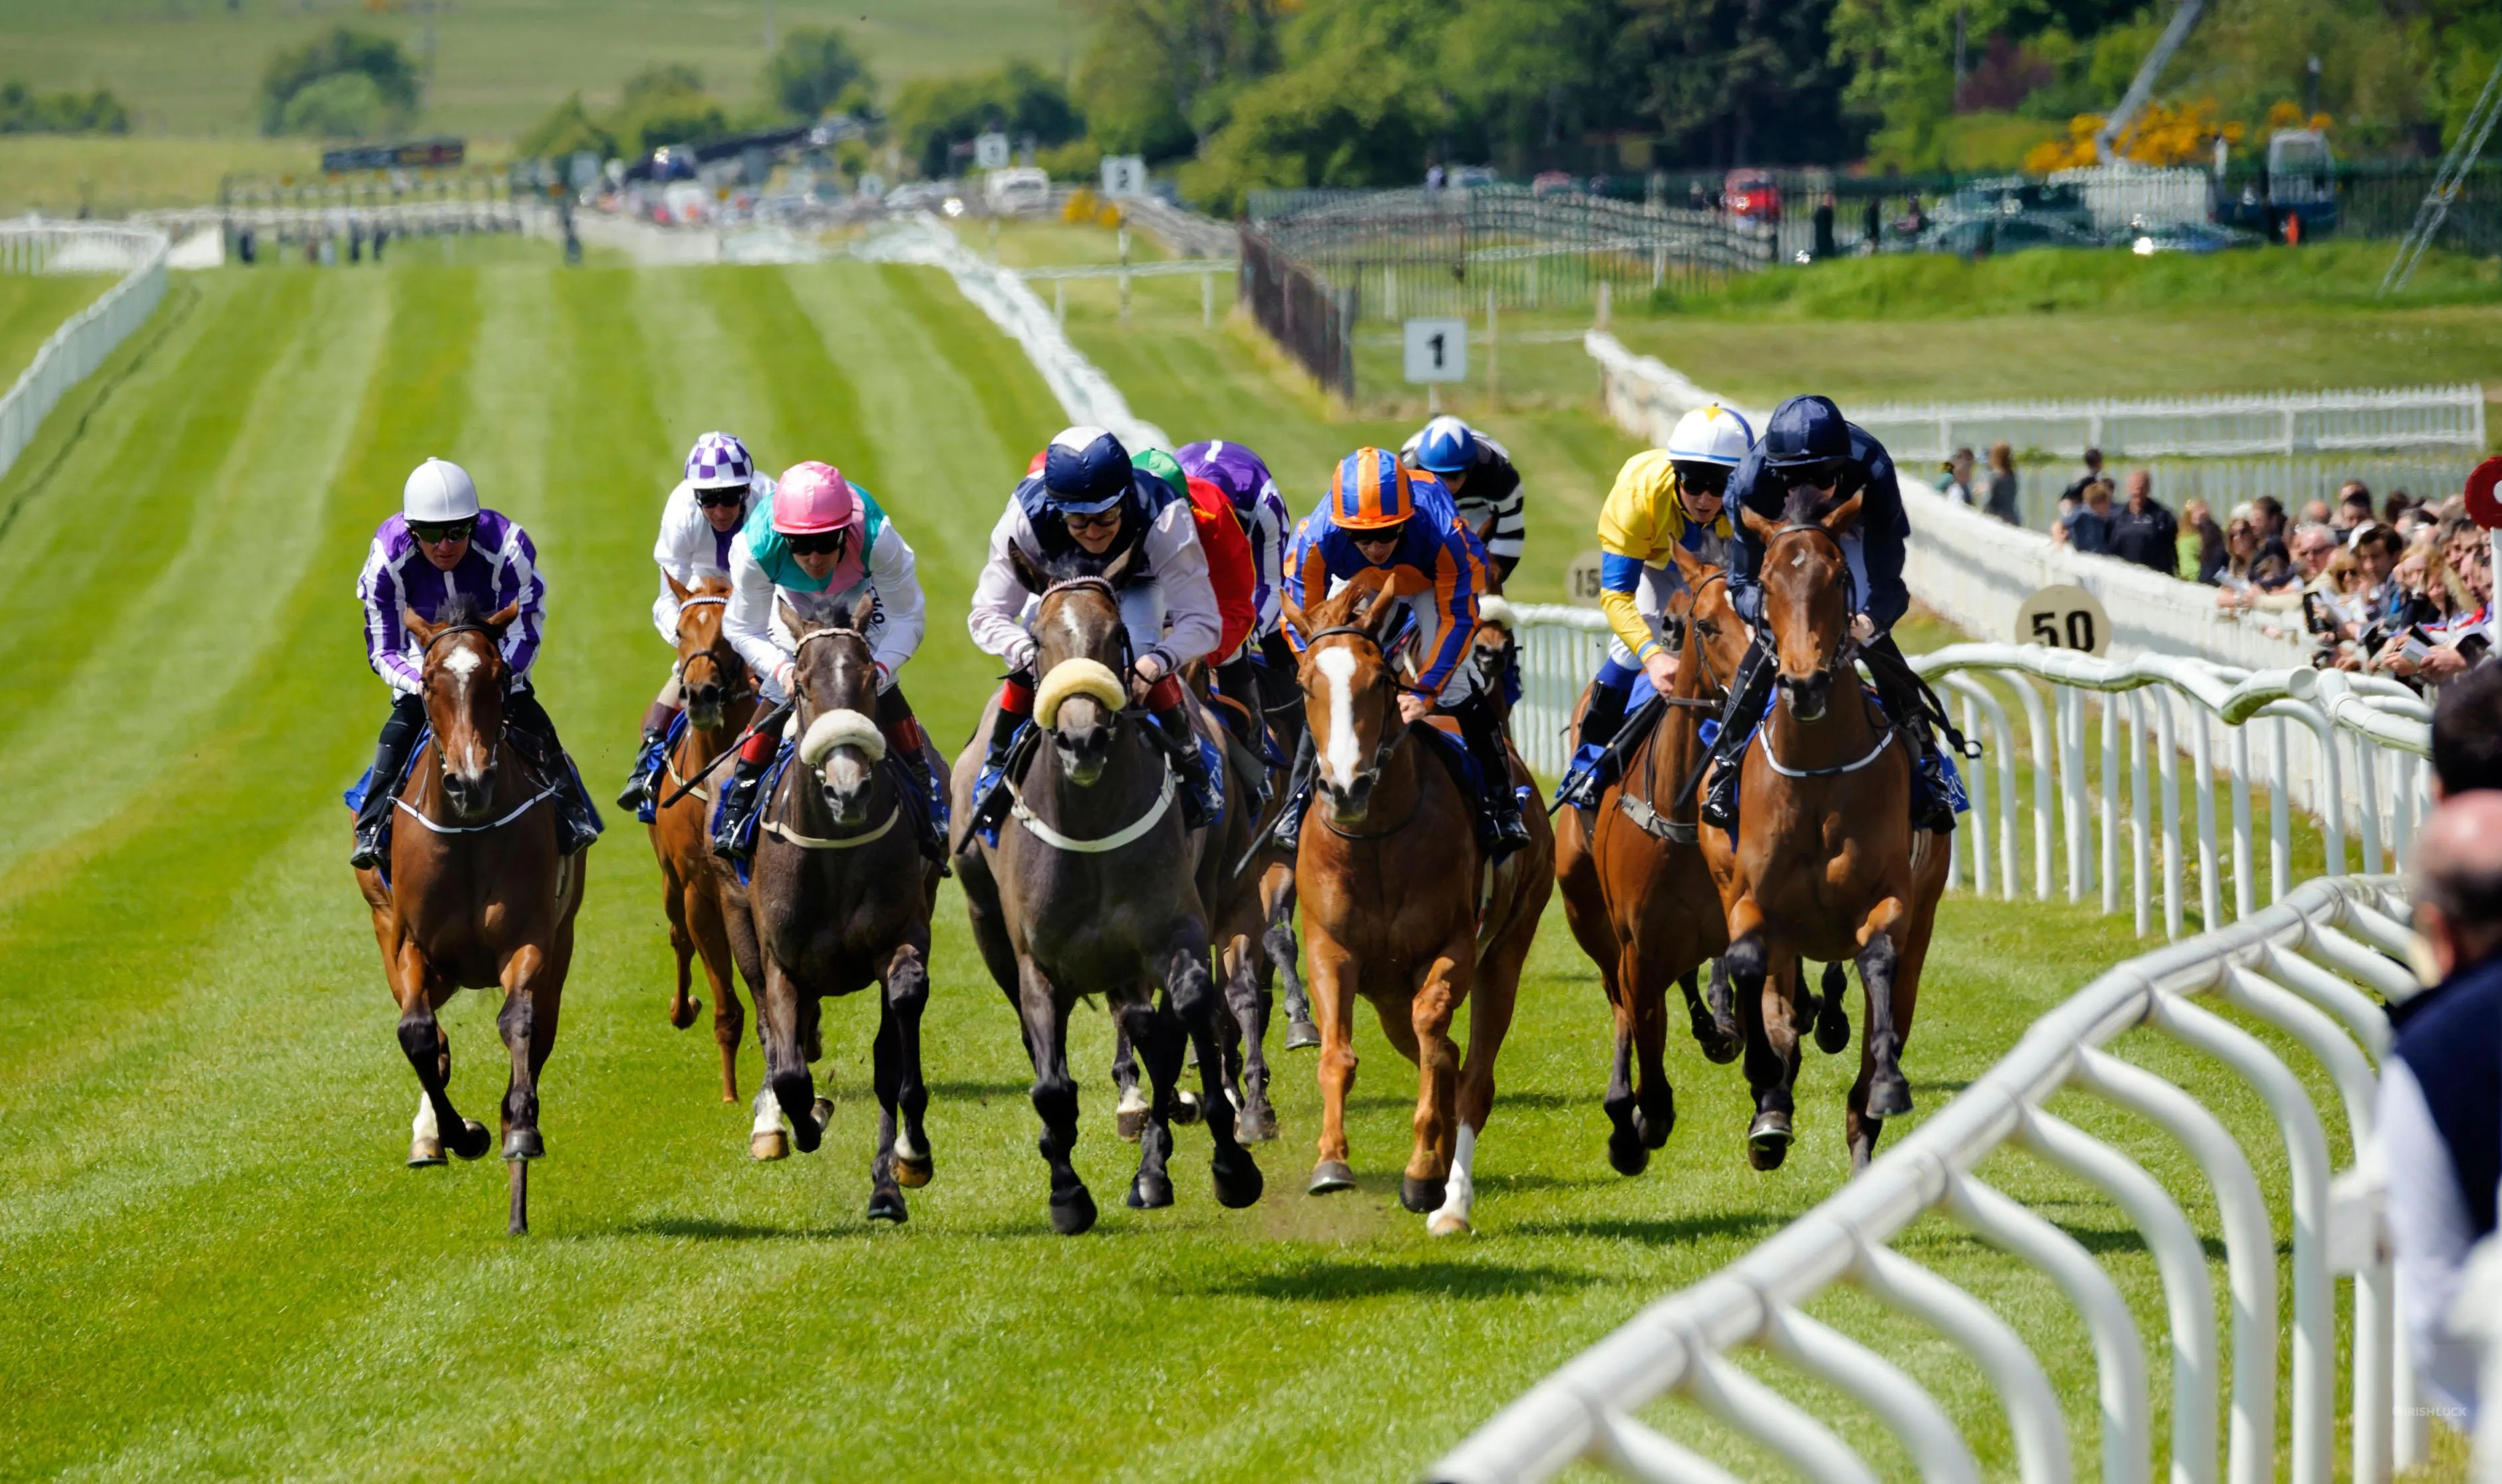 ireland horse racing controversial gambling bill irish horse racing betting